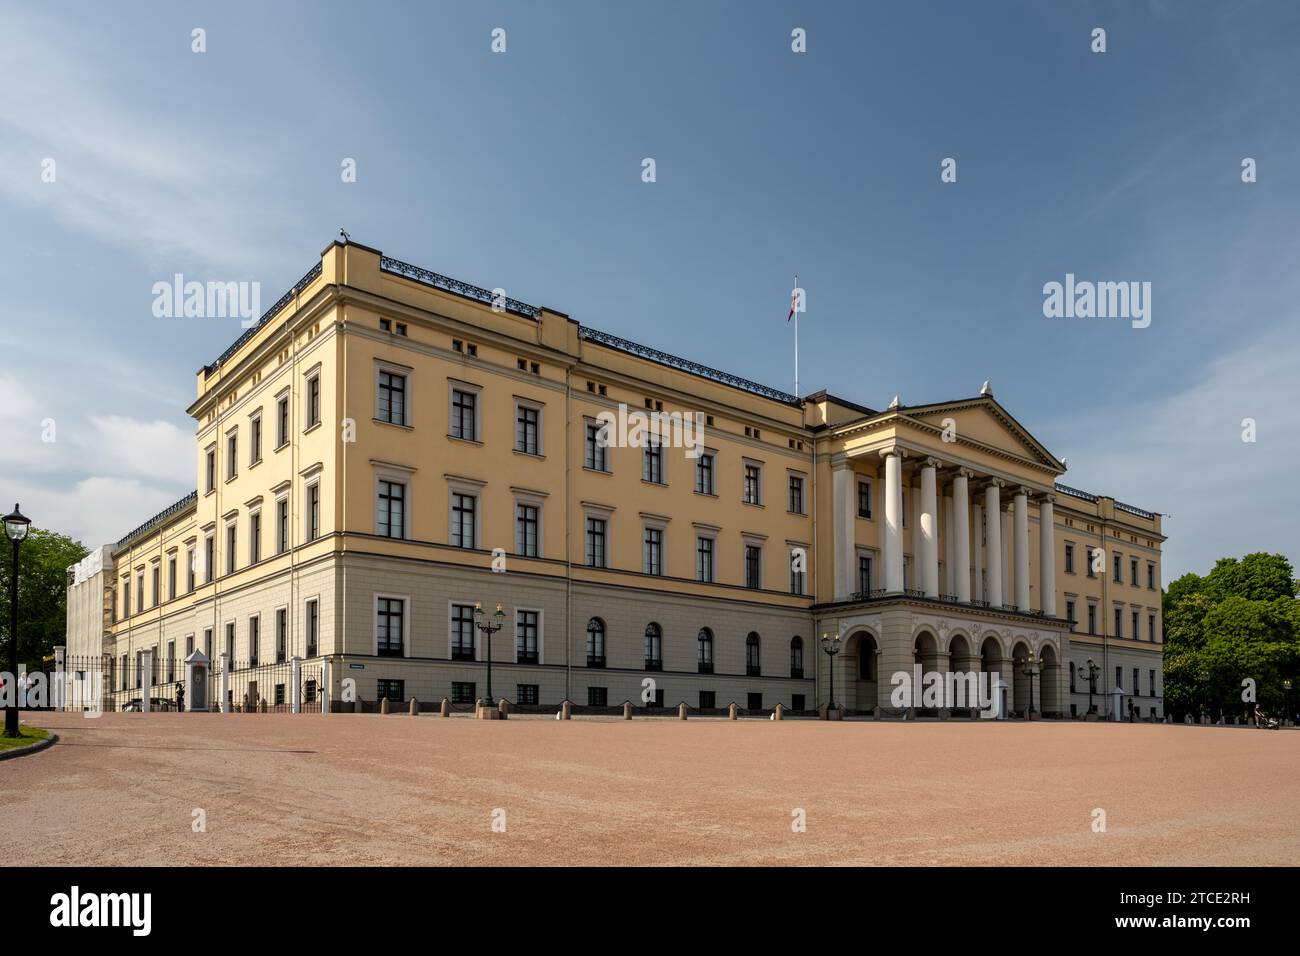 Slottet, Oslo Royal Palace Stock Photo